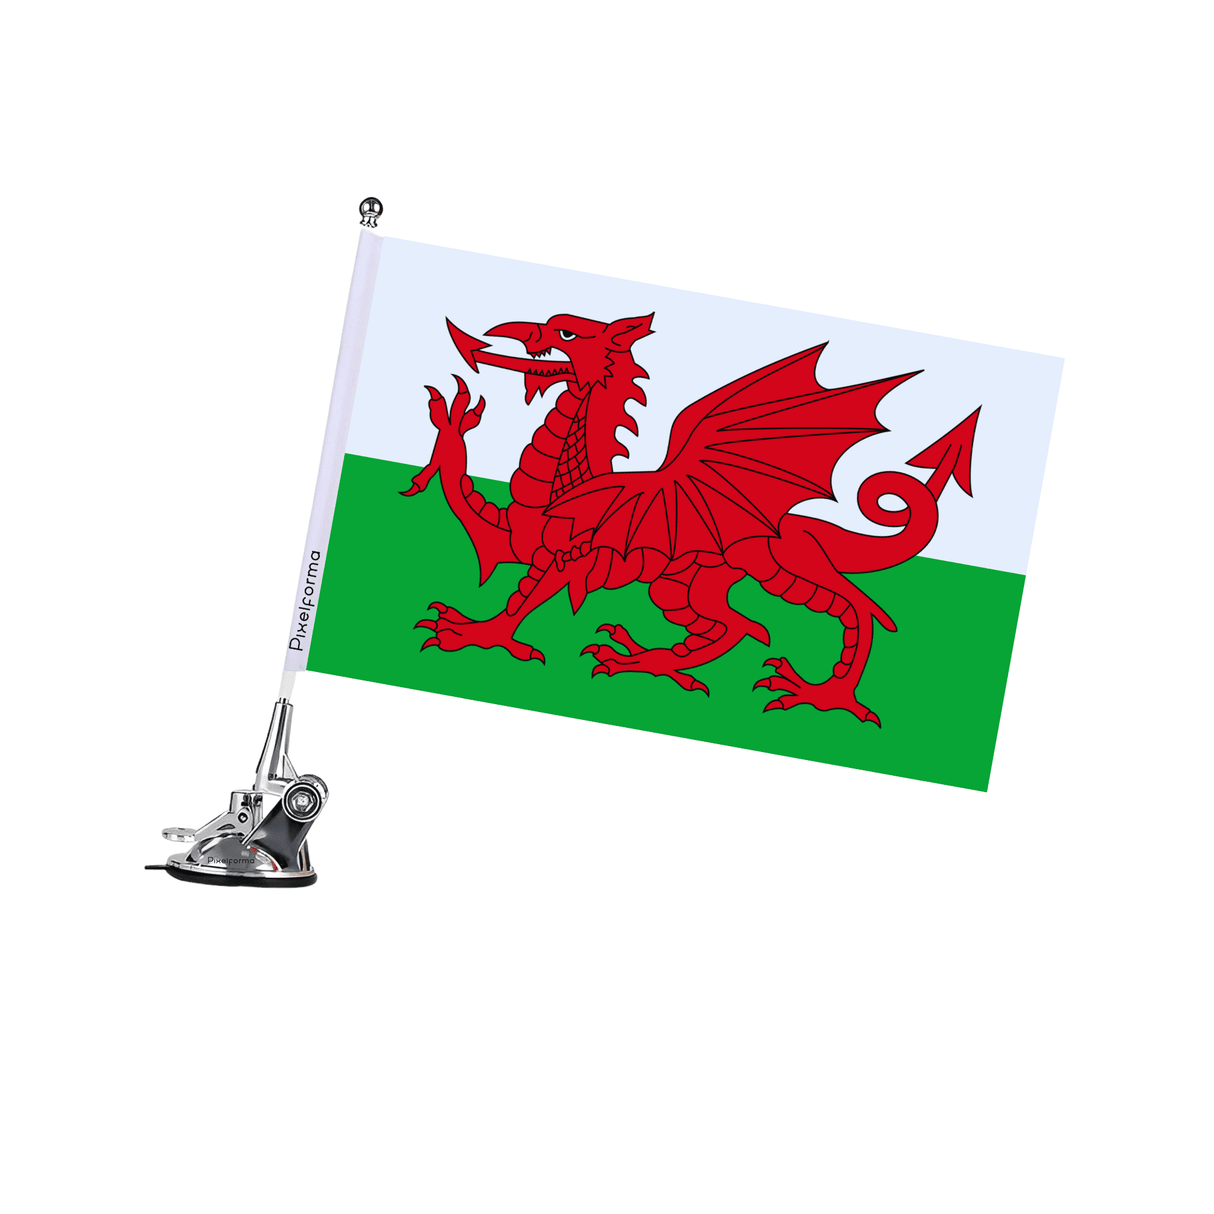 Mât à Ventouse Drapeau du pays de Galles - Pixelforma 